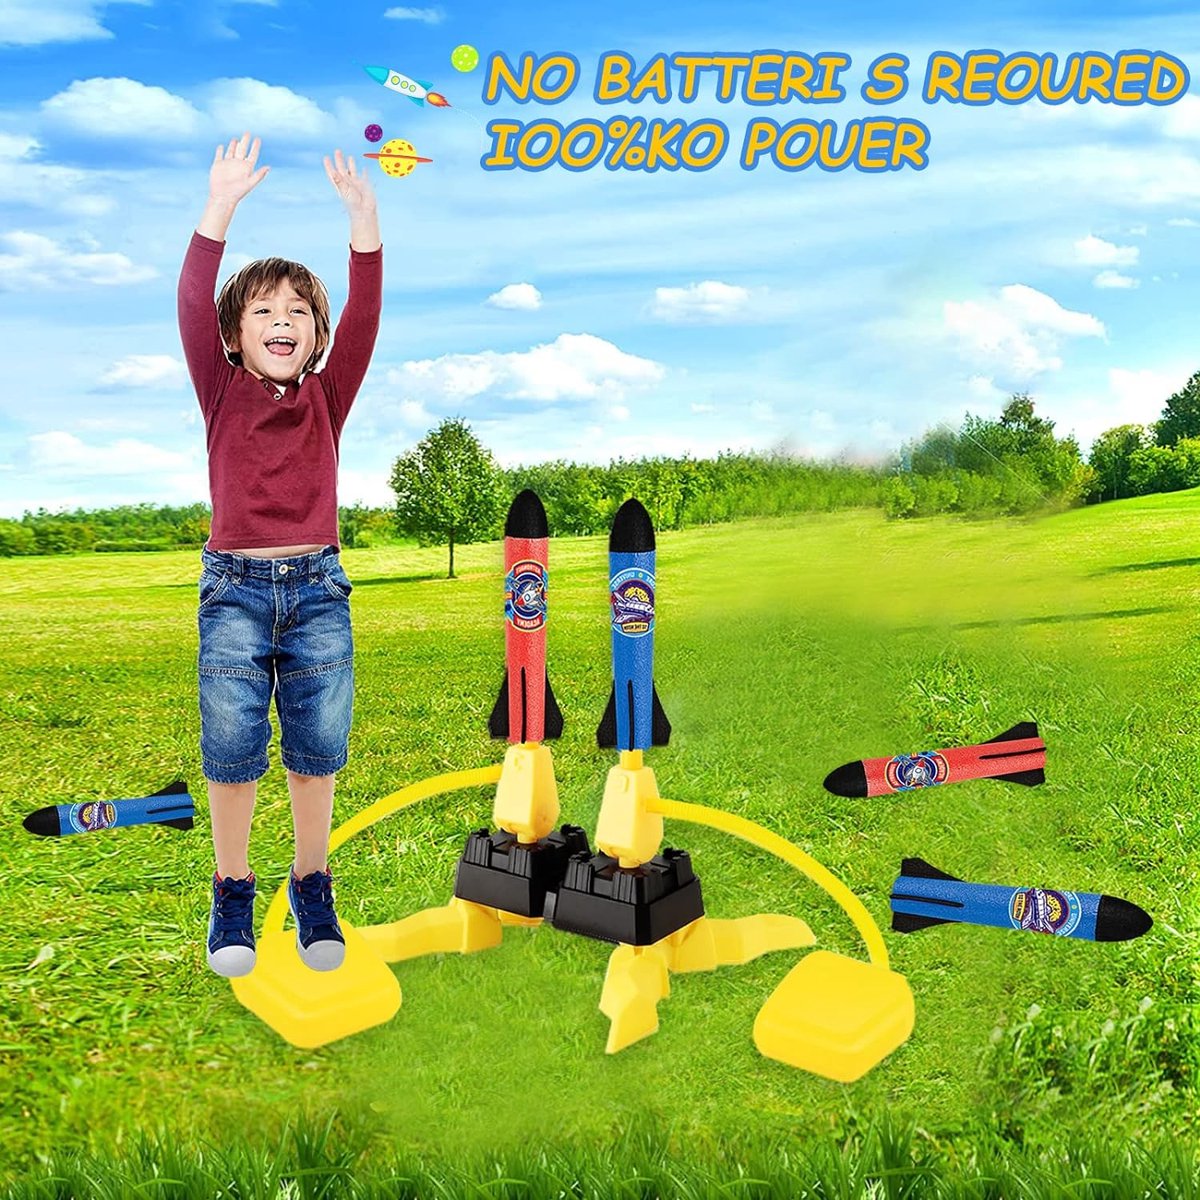 Lance-roquettes jouets pour enfants tire jusqu'à 100 pieds 8